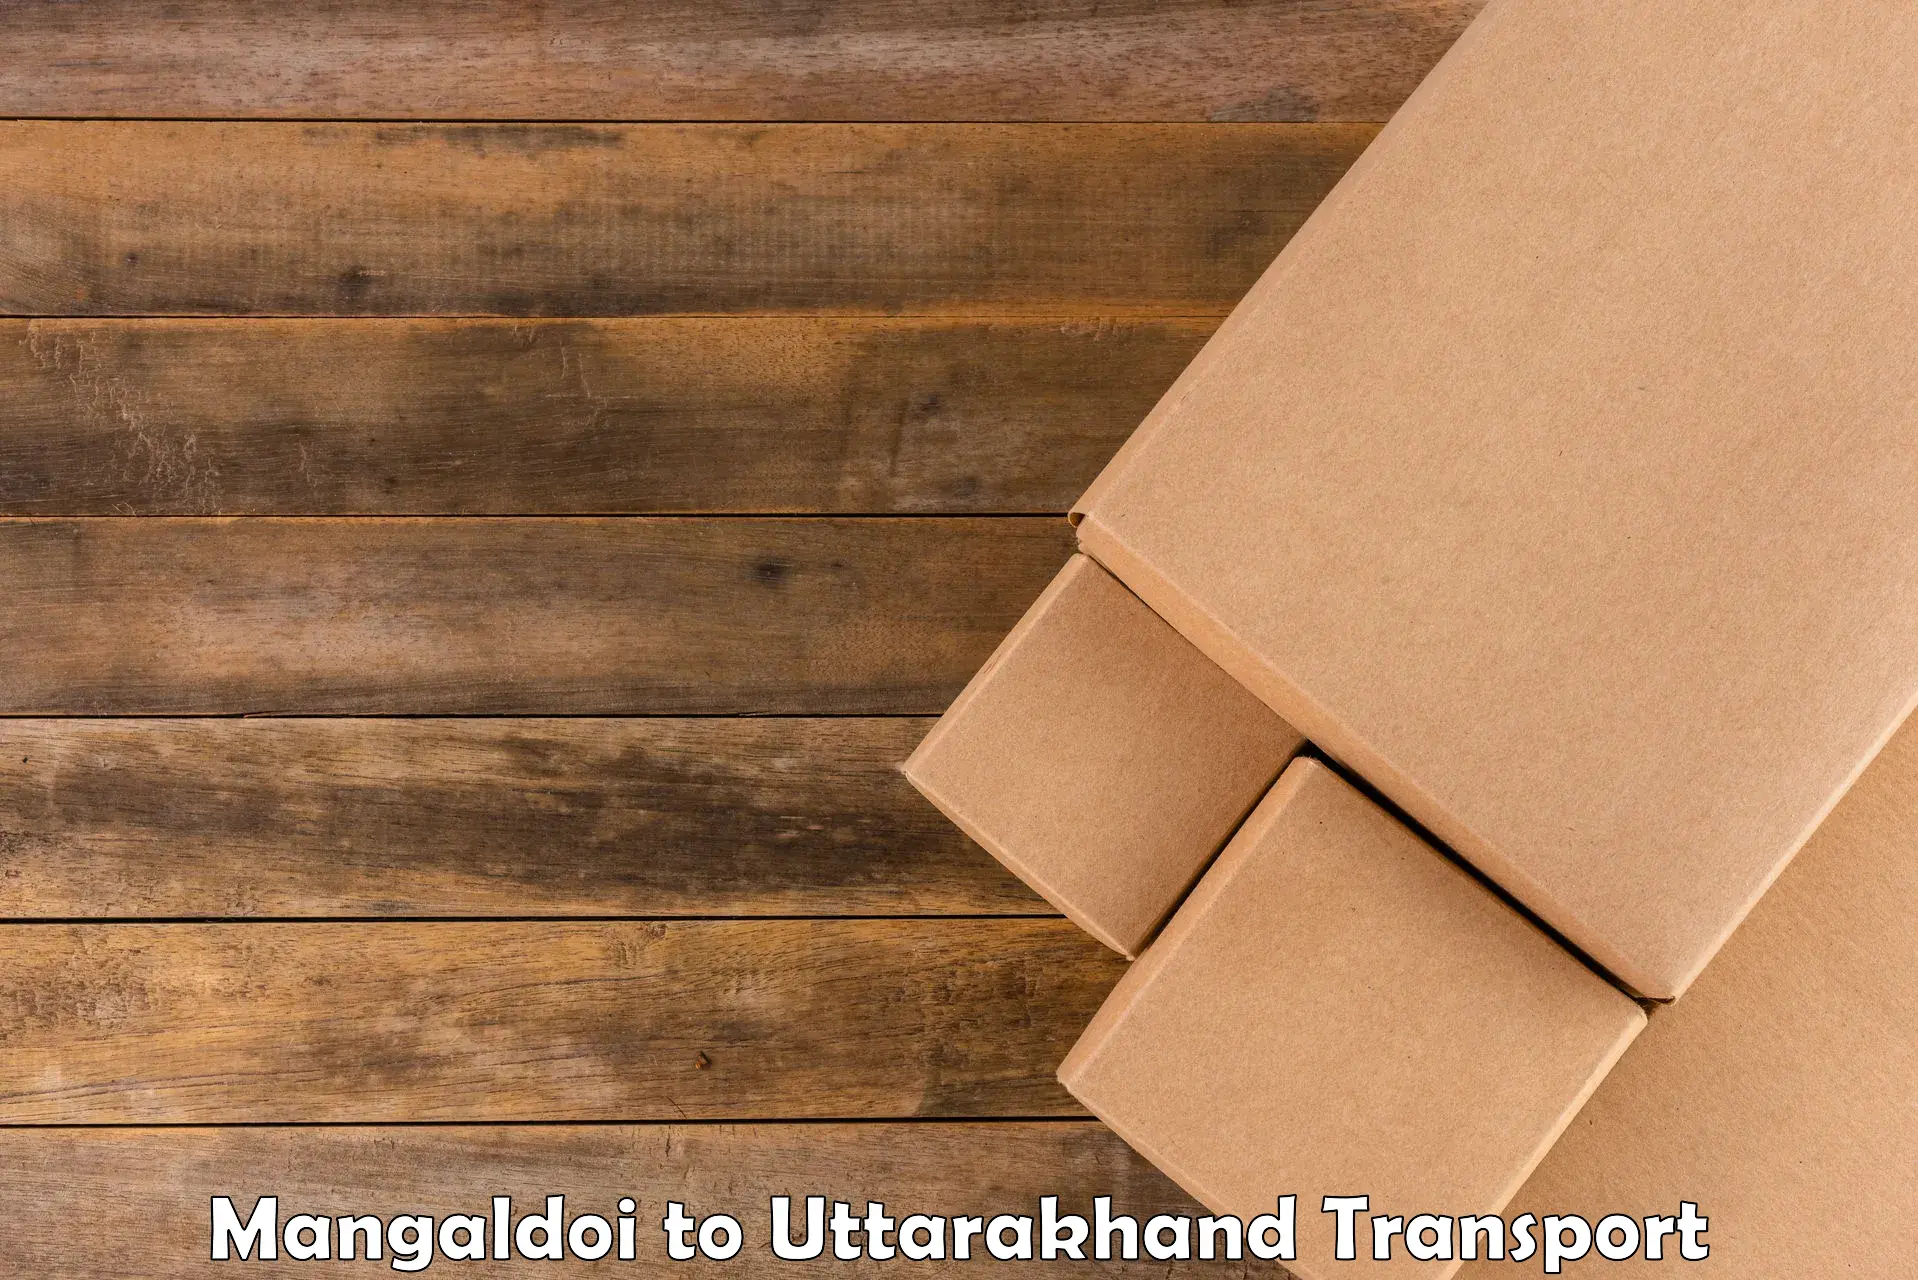 Cargo transportation services Mangaldoi to IIT Roorkee